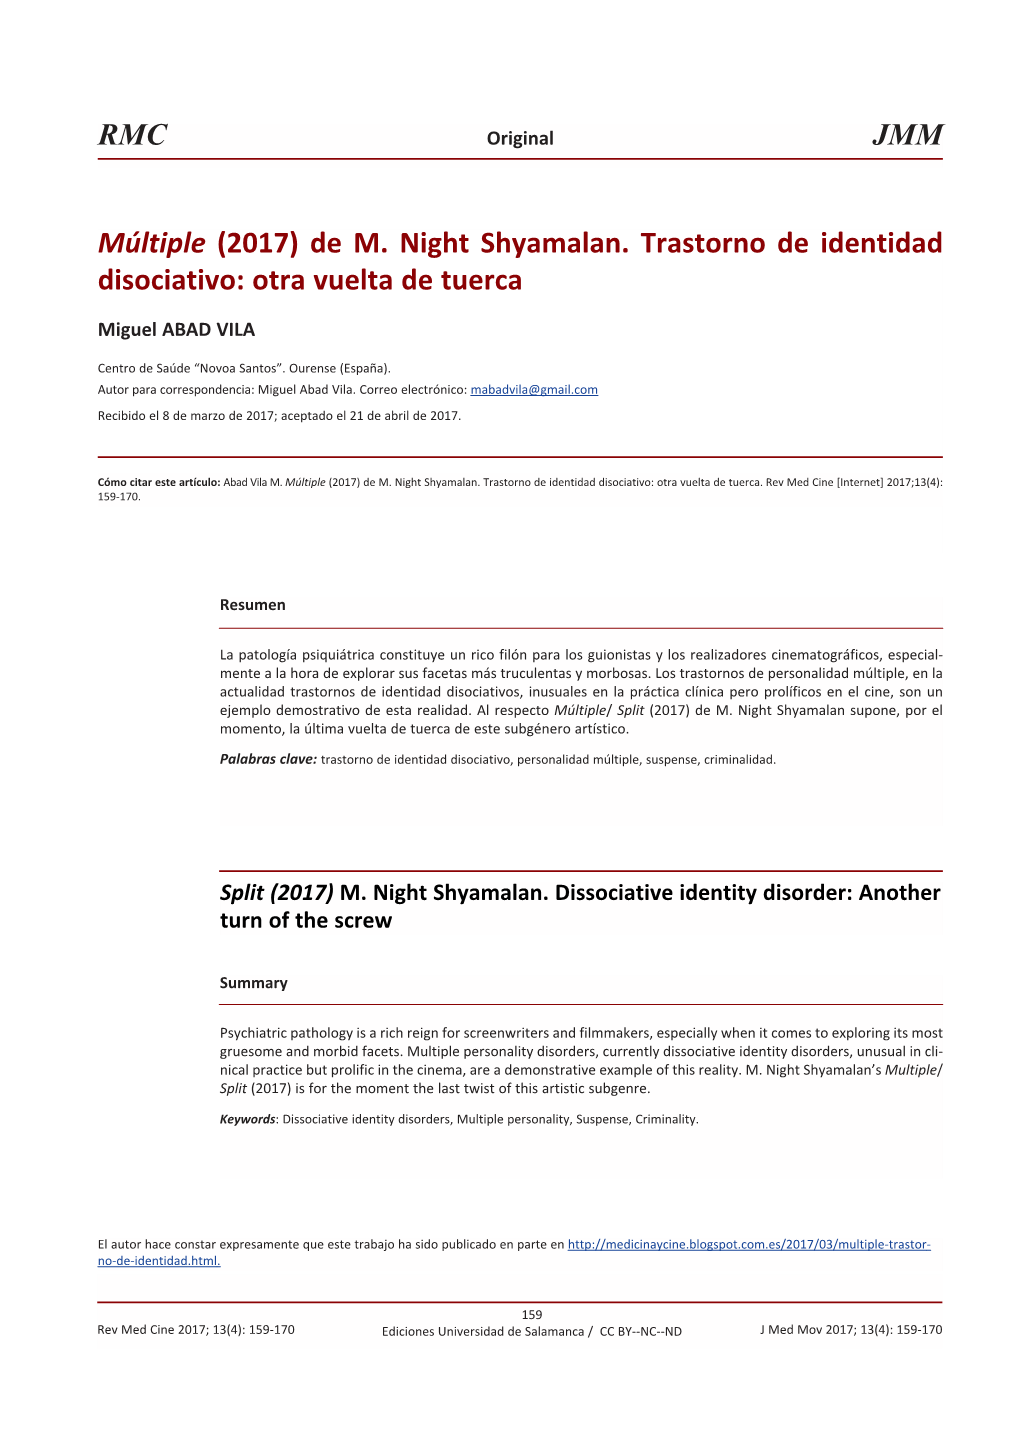 Múltiple (2017) De M. Night Shyamalan. Trastorno De Identidad Disociativo: Otra Vuelta De Tuerca